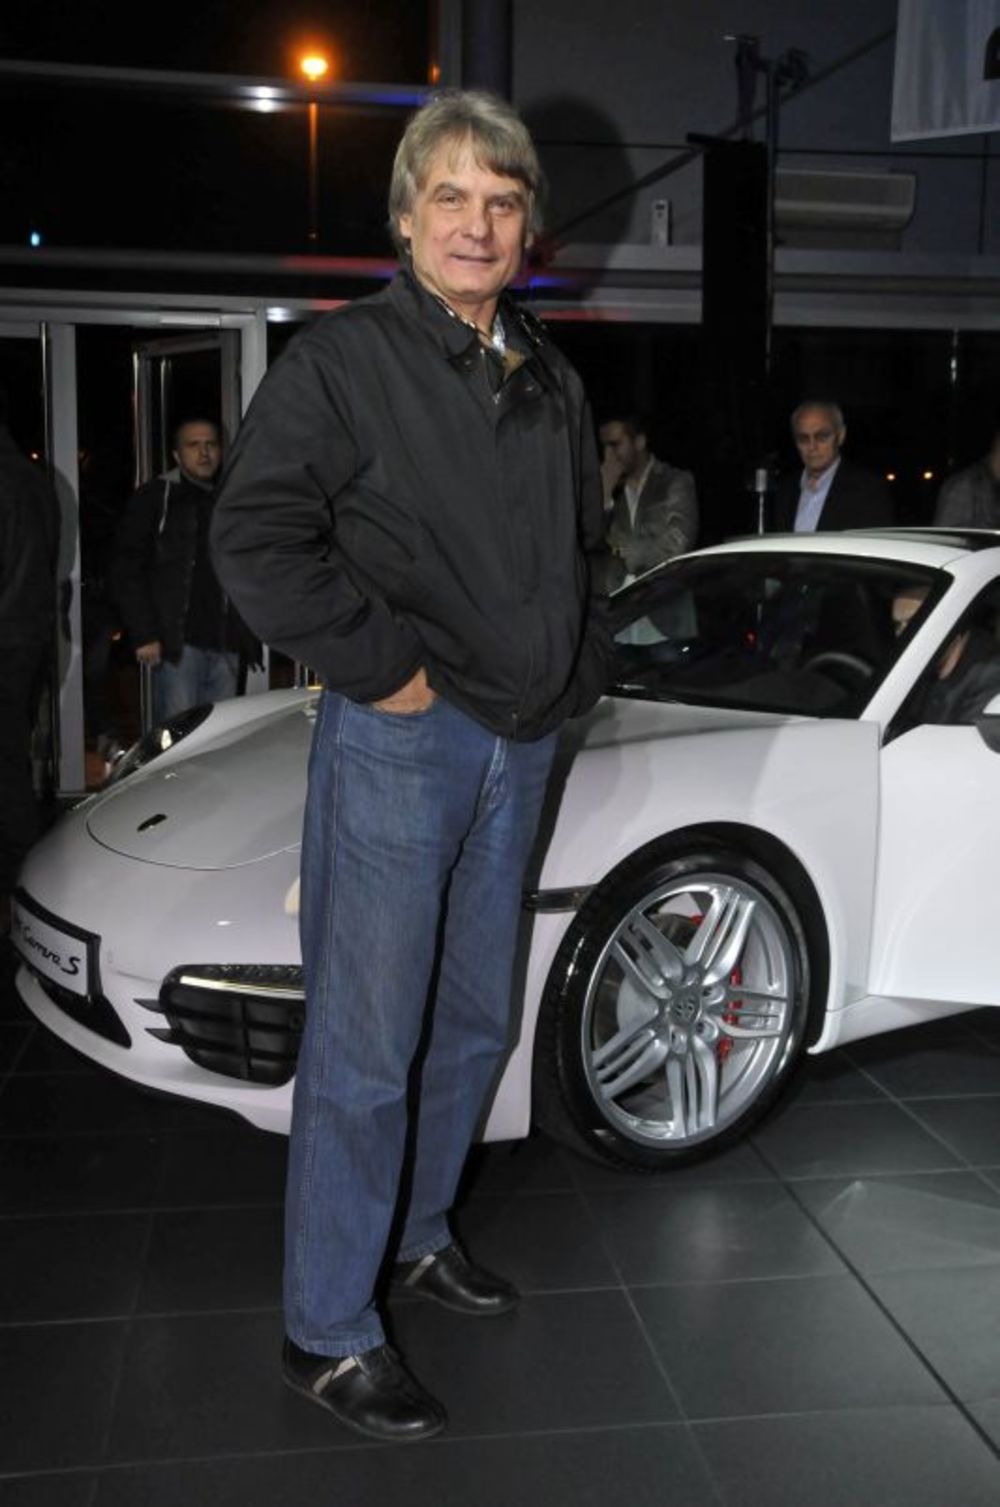 U Poršeovom centru kod Ade mnogobrojnim zvanicama predstavljen je najnoviji model legendarnog sportskog automobila – Porše Karera 911 S za 2012. godinu. Izuzetno bogat istorijat ovog vrhunskog dostignuća automobilske industrije predstavili su poznata voditeljk